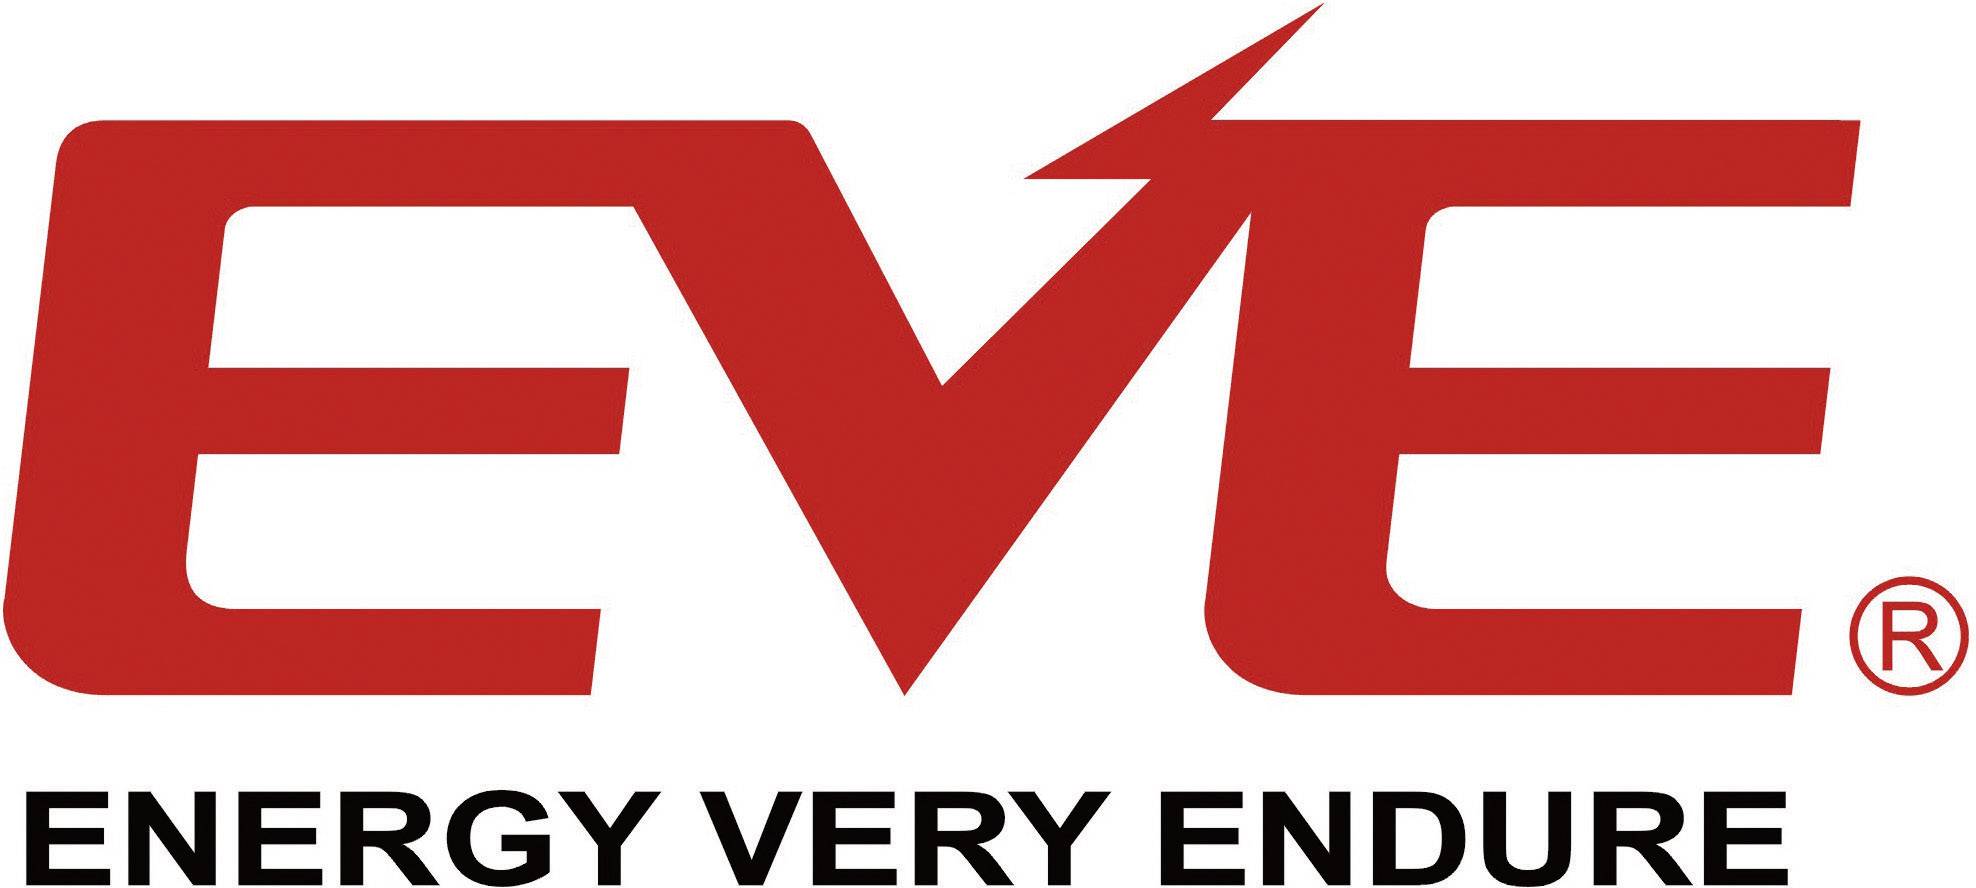 Eve energy. Eve логотип. Батарейки Eve логотип. Энергетики Eve. Красный логотип Energy.